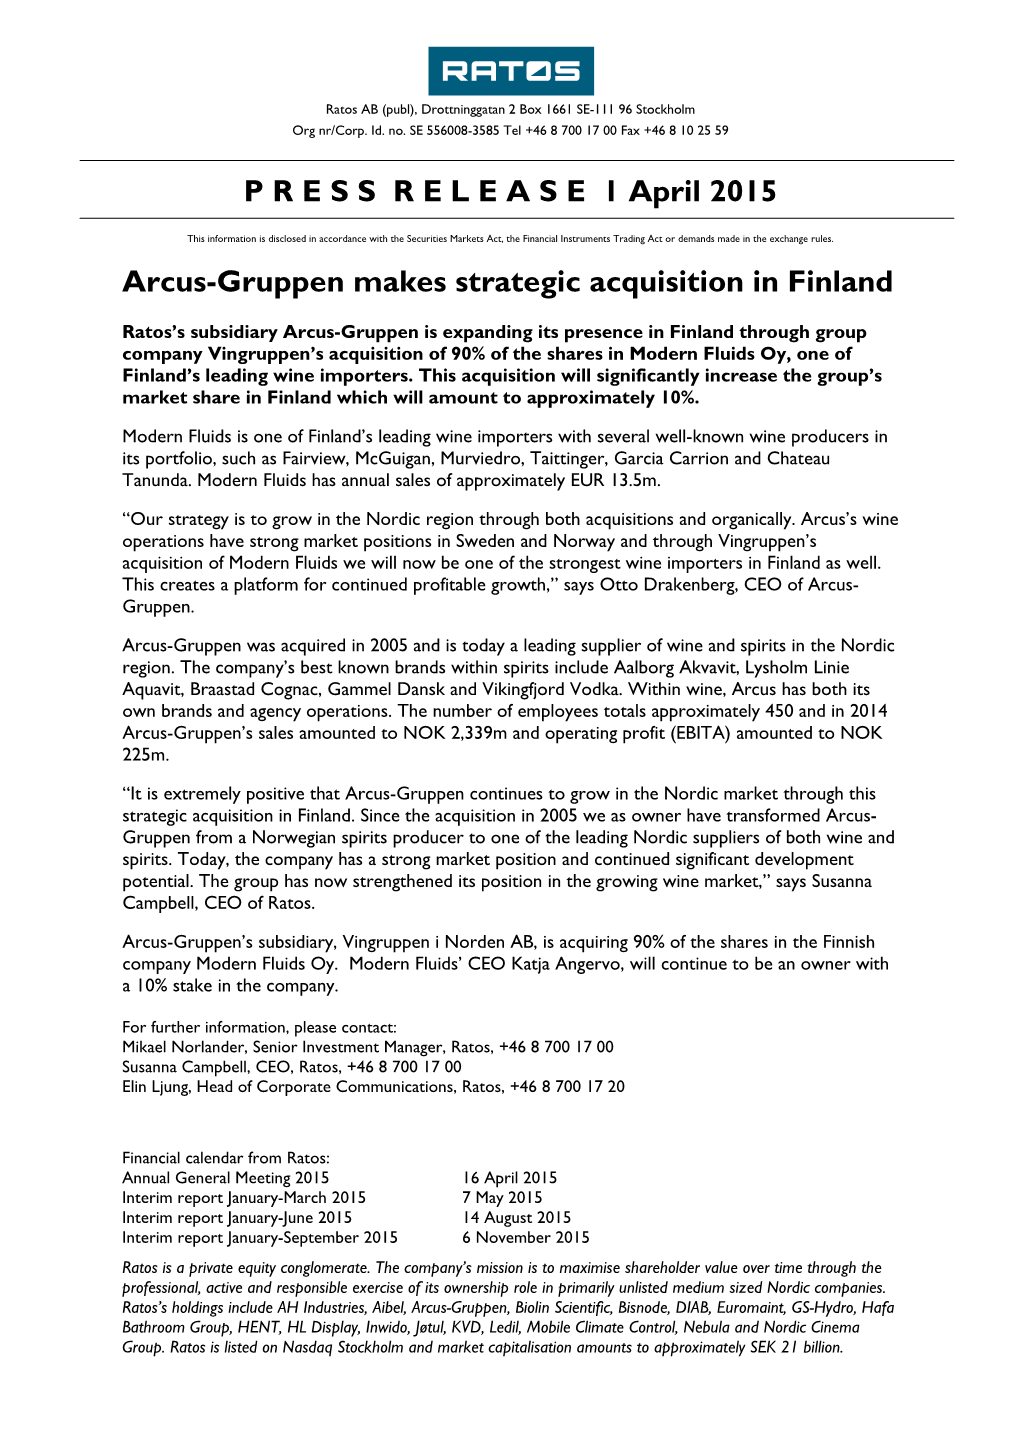 P R E S S R E L E a S E 1 April 2015 Arcus-Gruppen Makes Strategic Acquisition in Finland